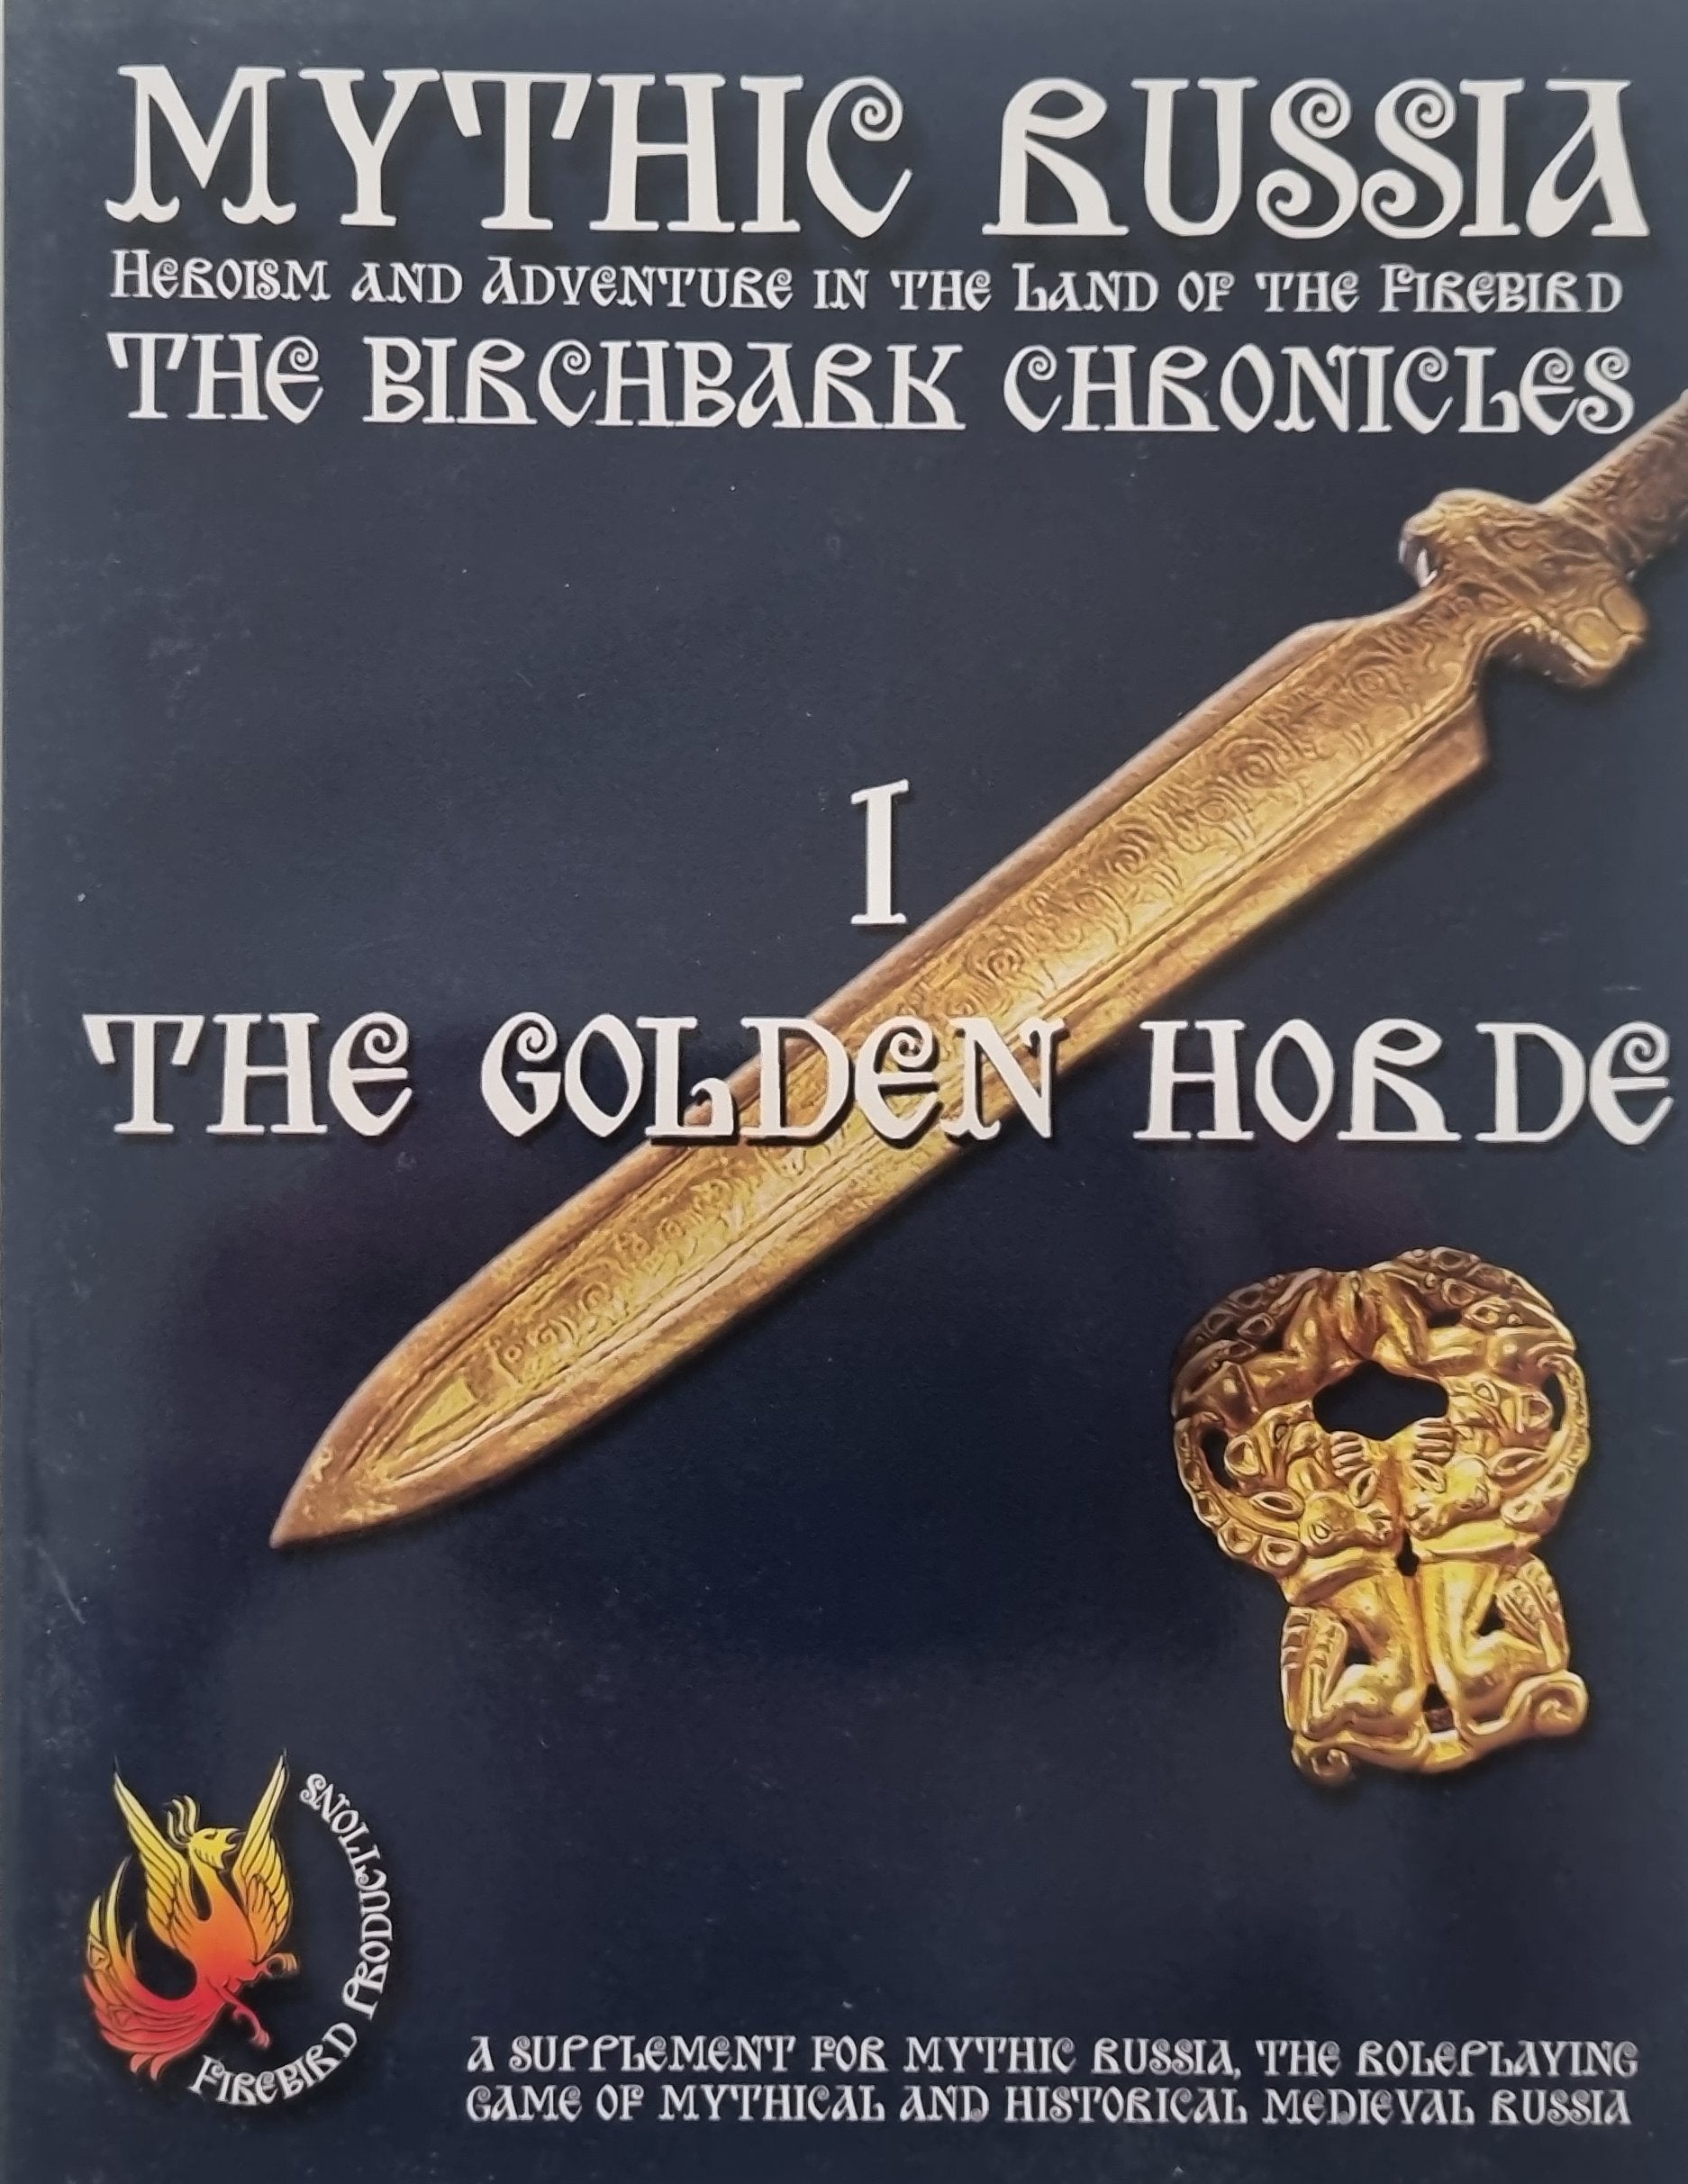 Mythic Russia - The Golden Horde (Birchbark Chronicles)